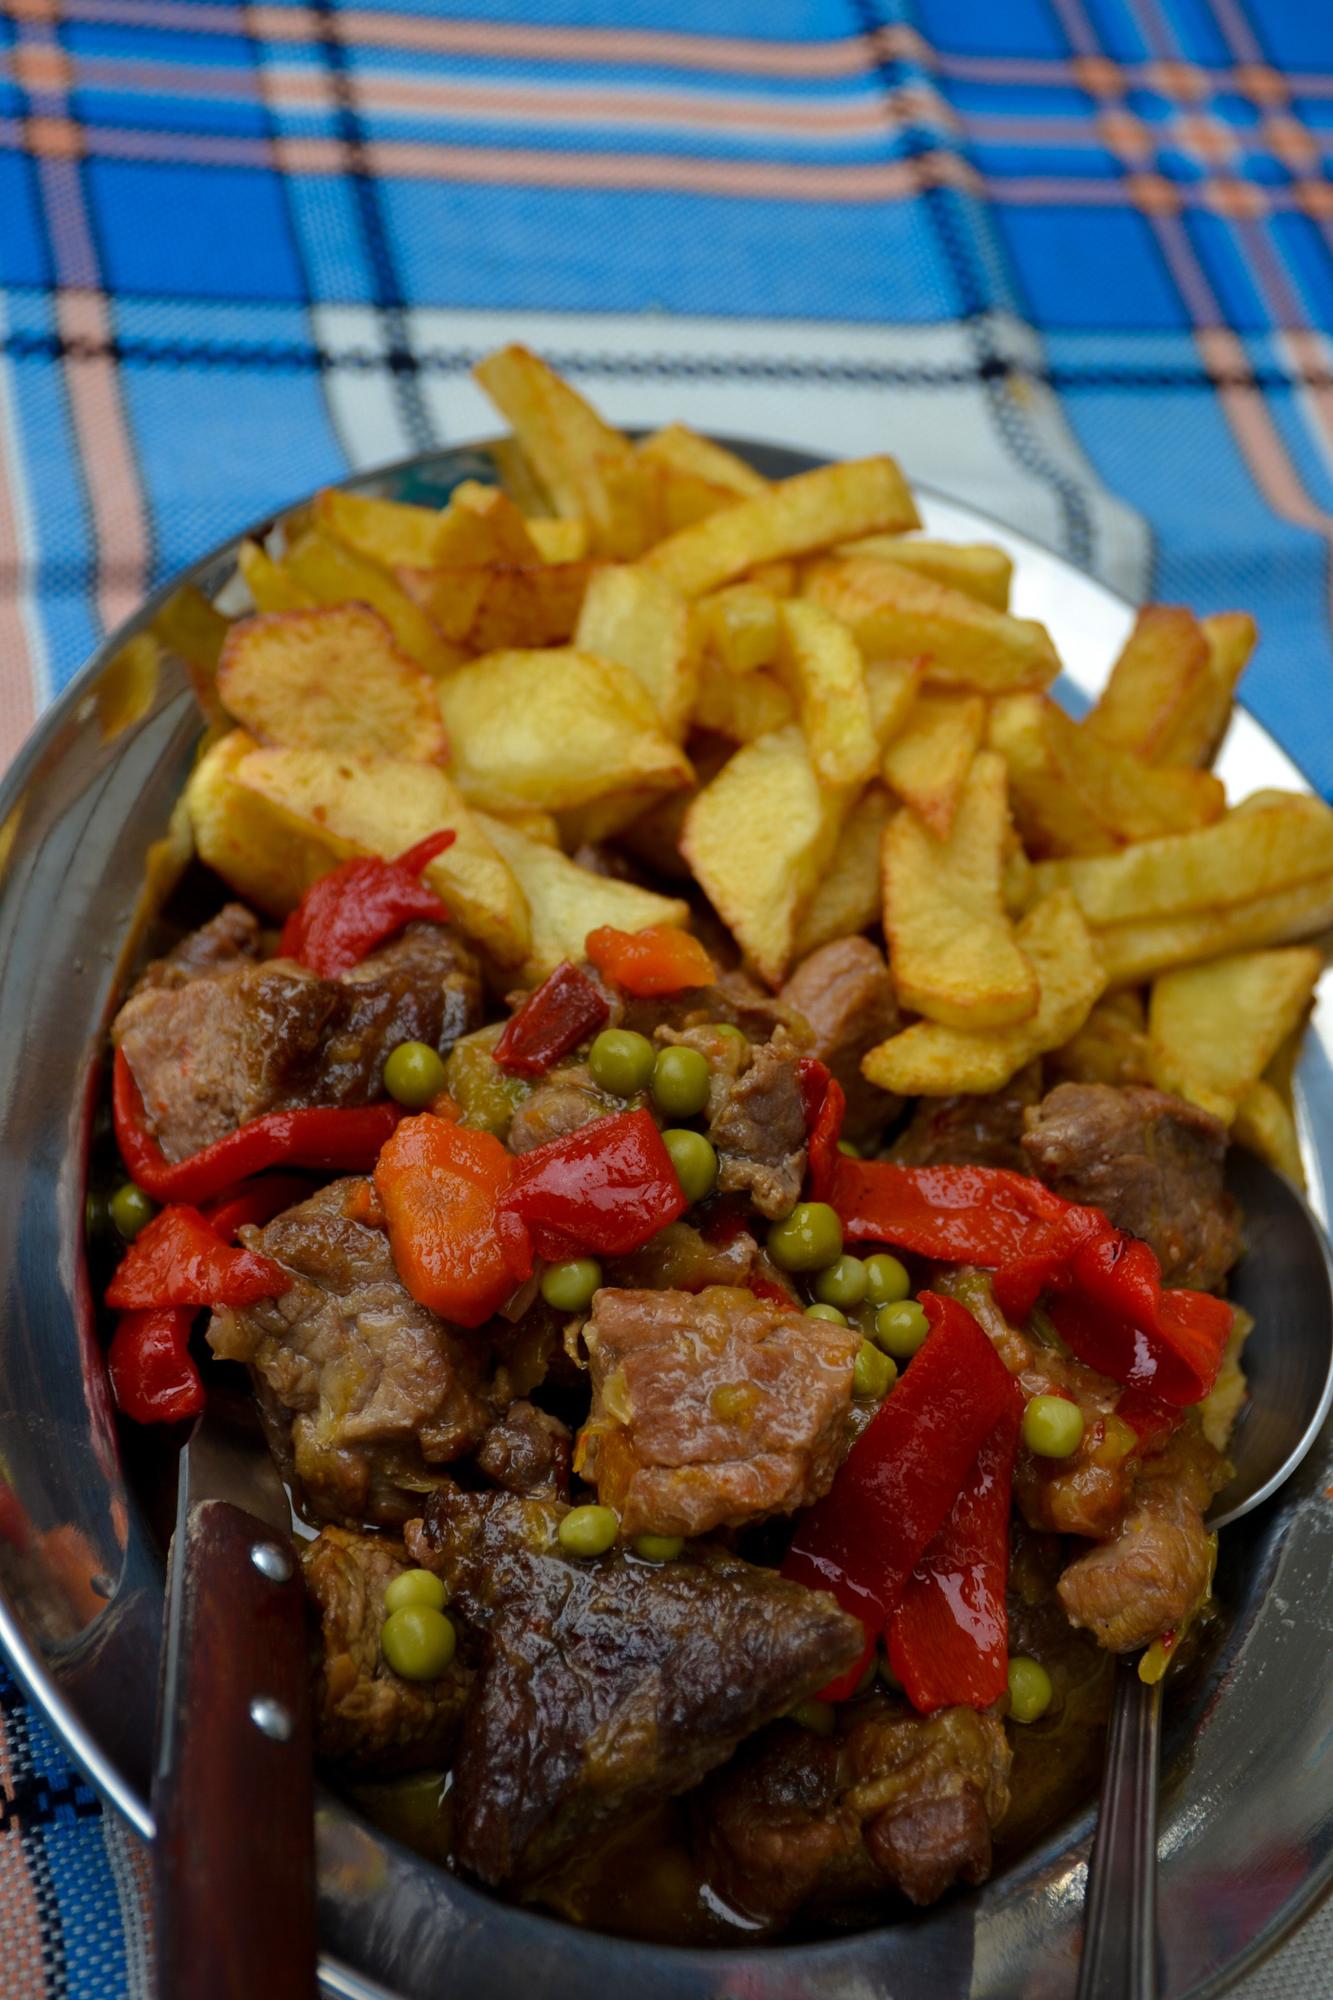 Carne guisada al modo tradicional acompañada de pimientos, guisantes y patatas fritas.